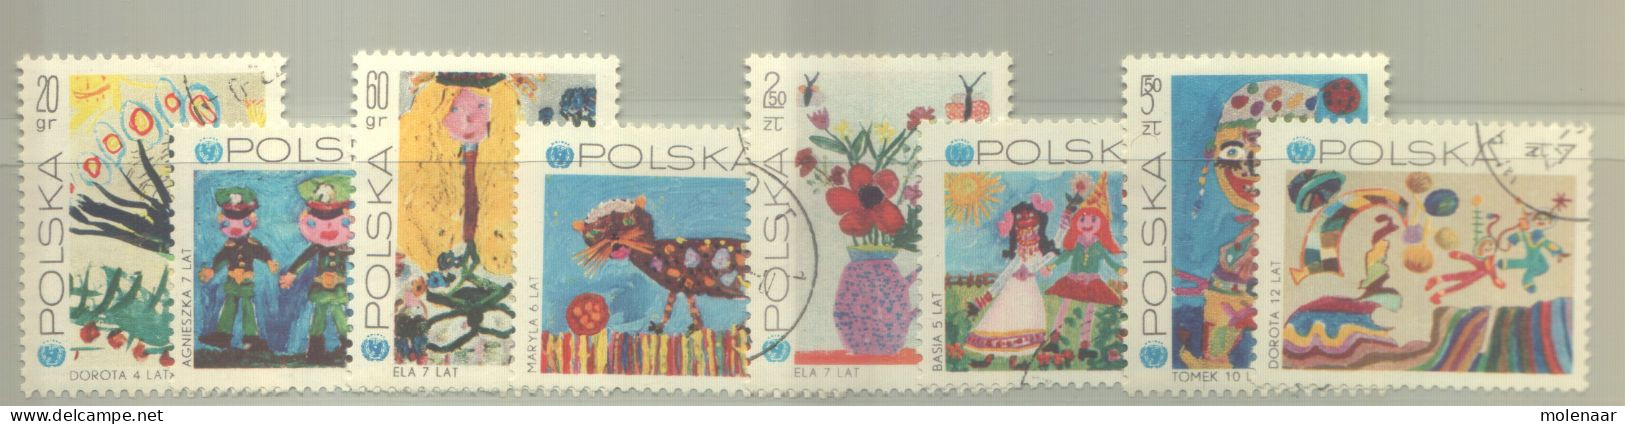 Postzegels > Europa > Polen > 1944-.... Republiek > 1981-90 > Gebruikt 2075-2082 (12193) - Used Stamps